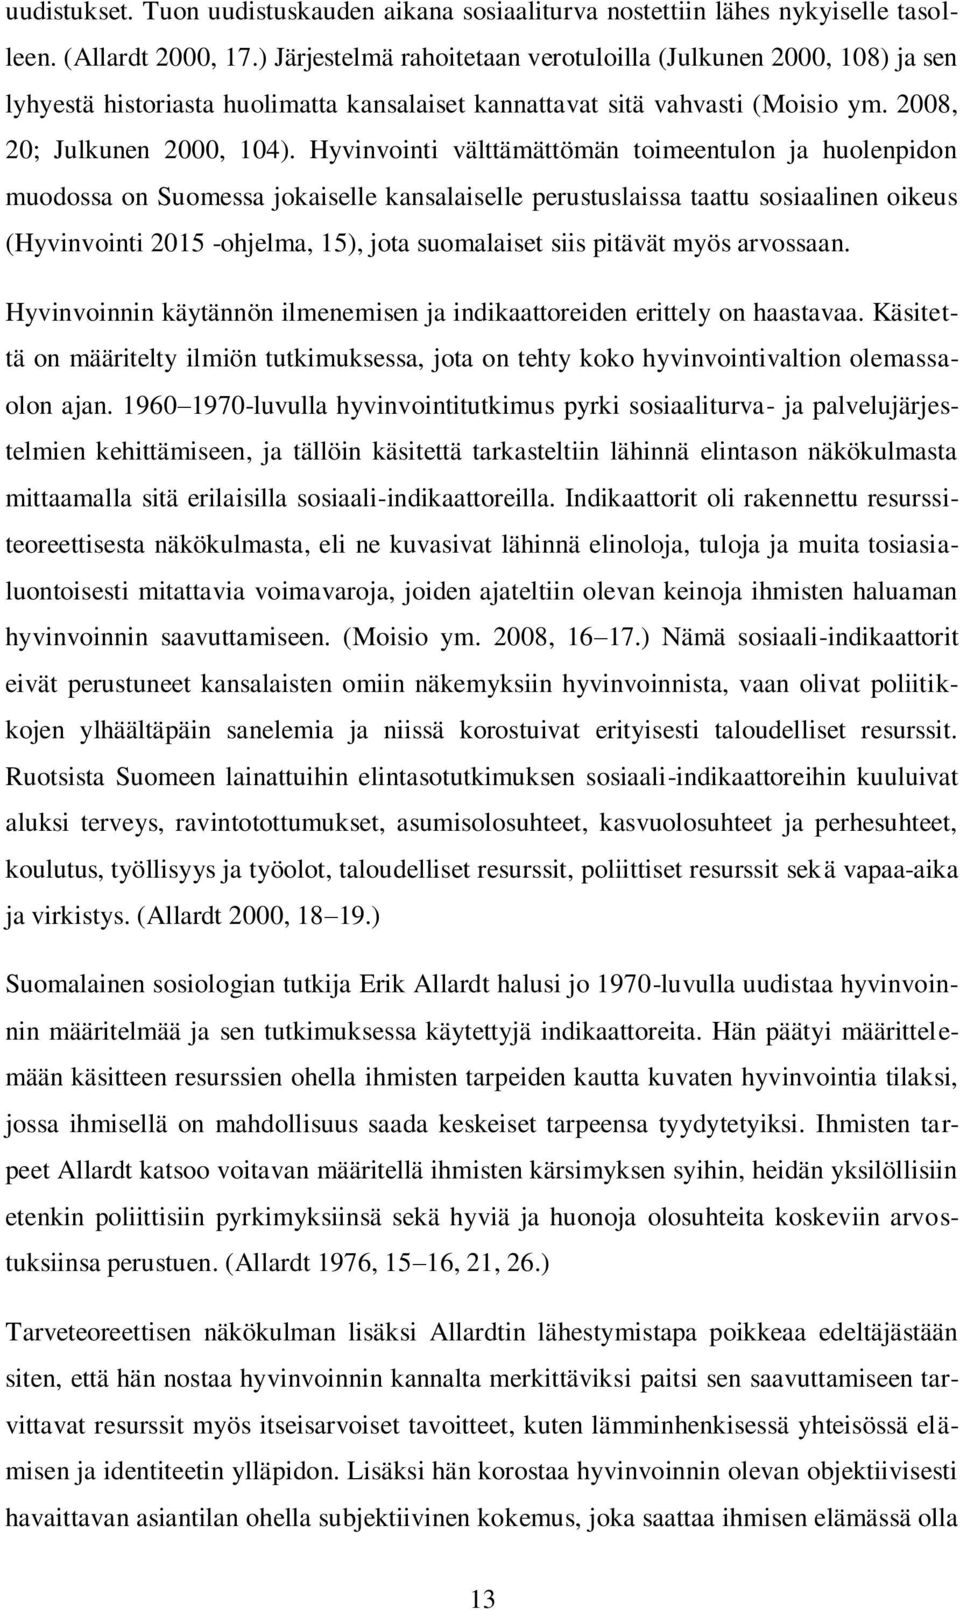 Hyvinvointi välttämättömän toimeentulon ja huolenpidon muodossa on Suomessa jokaiselle kansalaiselle perustuslaissa taattu sosiaalinen oikeus (Hyvinvointi 2015 -ohjelma, 15), jota suomalaiset siis